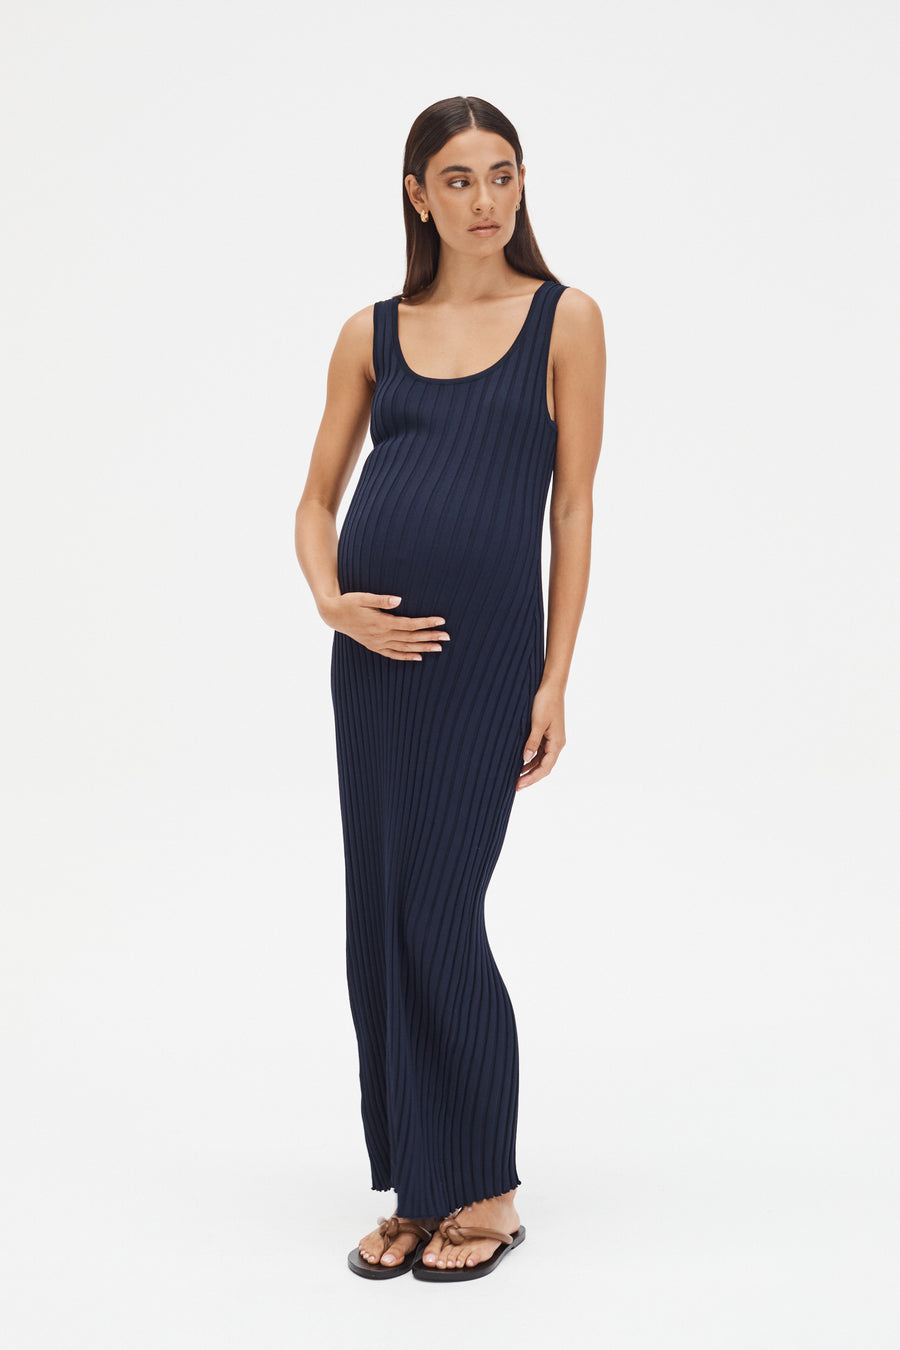 Stylish Maternity Maxi Dress (Navy) 3